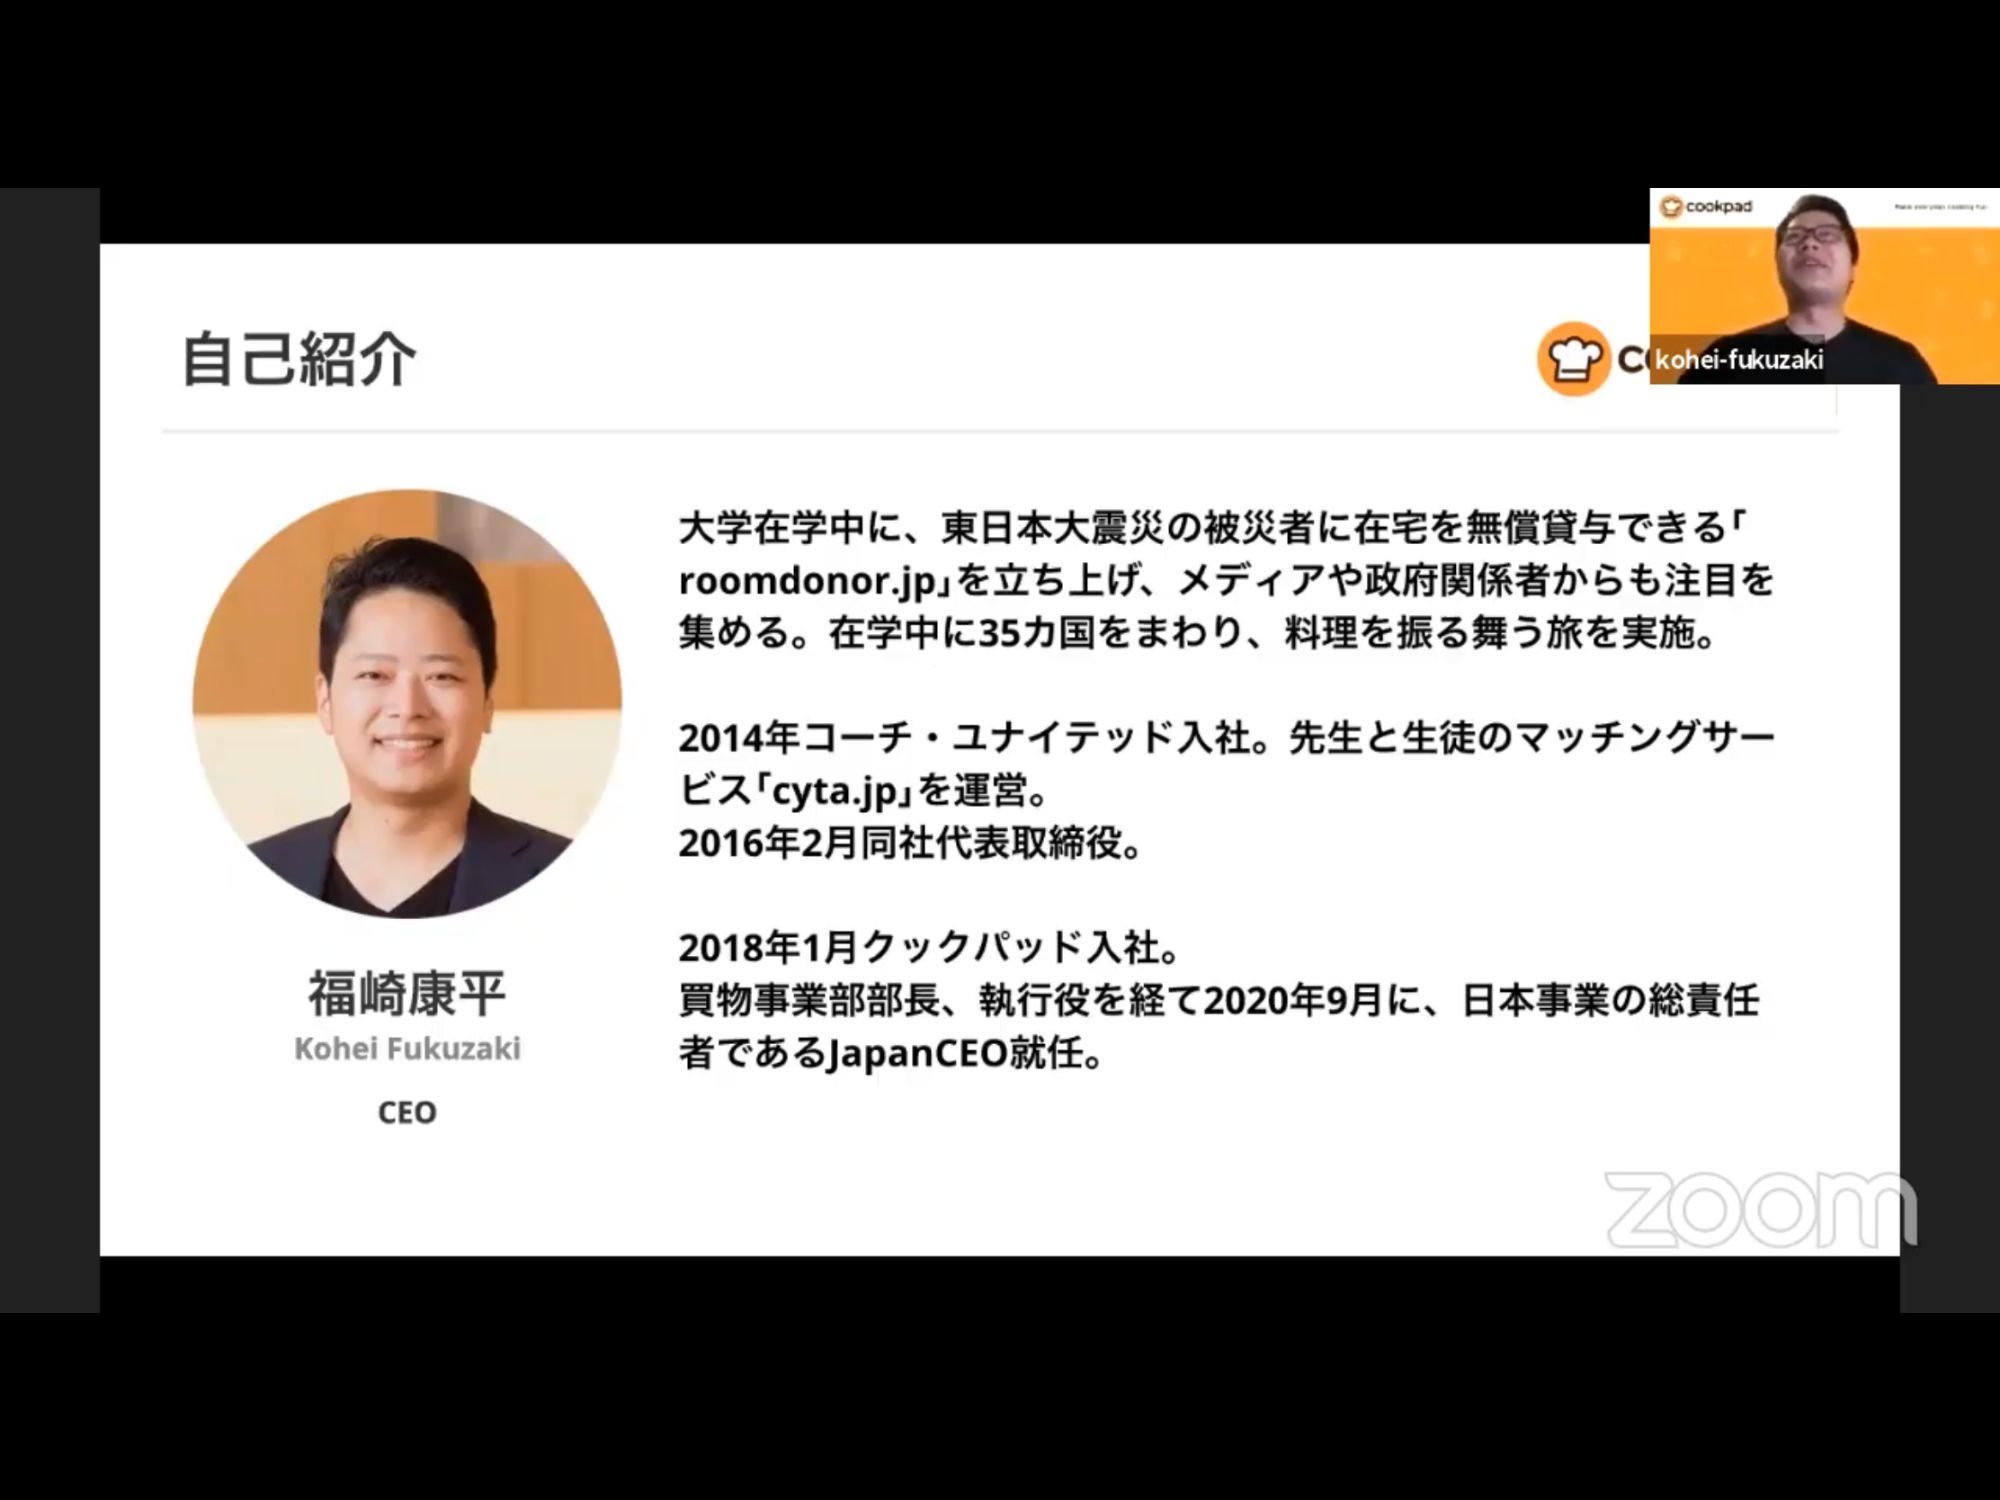 クックパッド Japan CEO 福崎康平氏のプロフィール